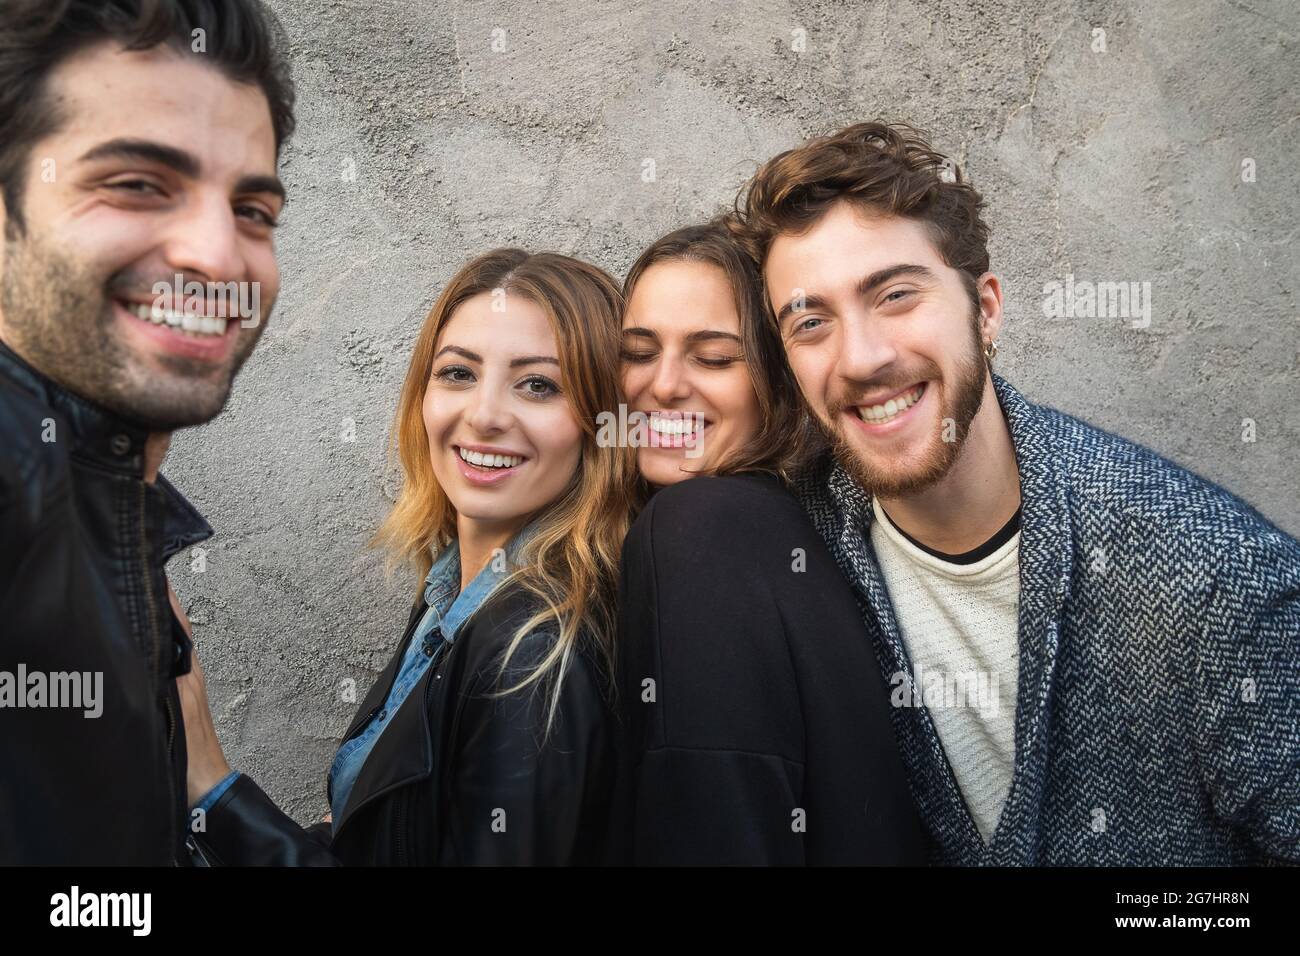 Portrait de la génération du millénaire souriant à l'appareil photo. Groupe de jeunes s'amuser ensemble contre un mur de béton. Banque D'Images